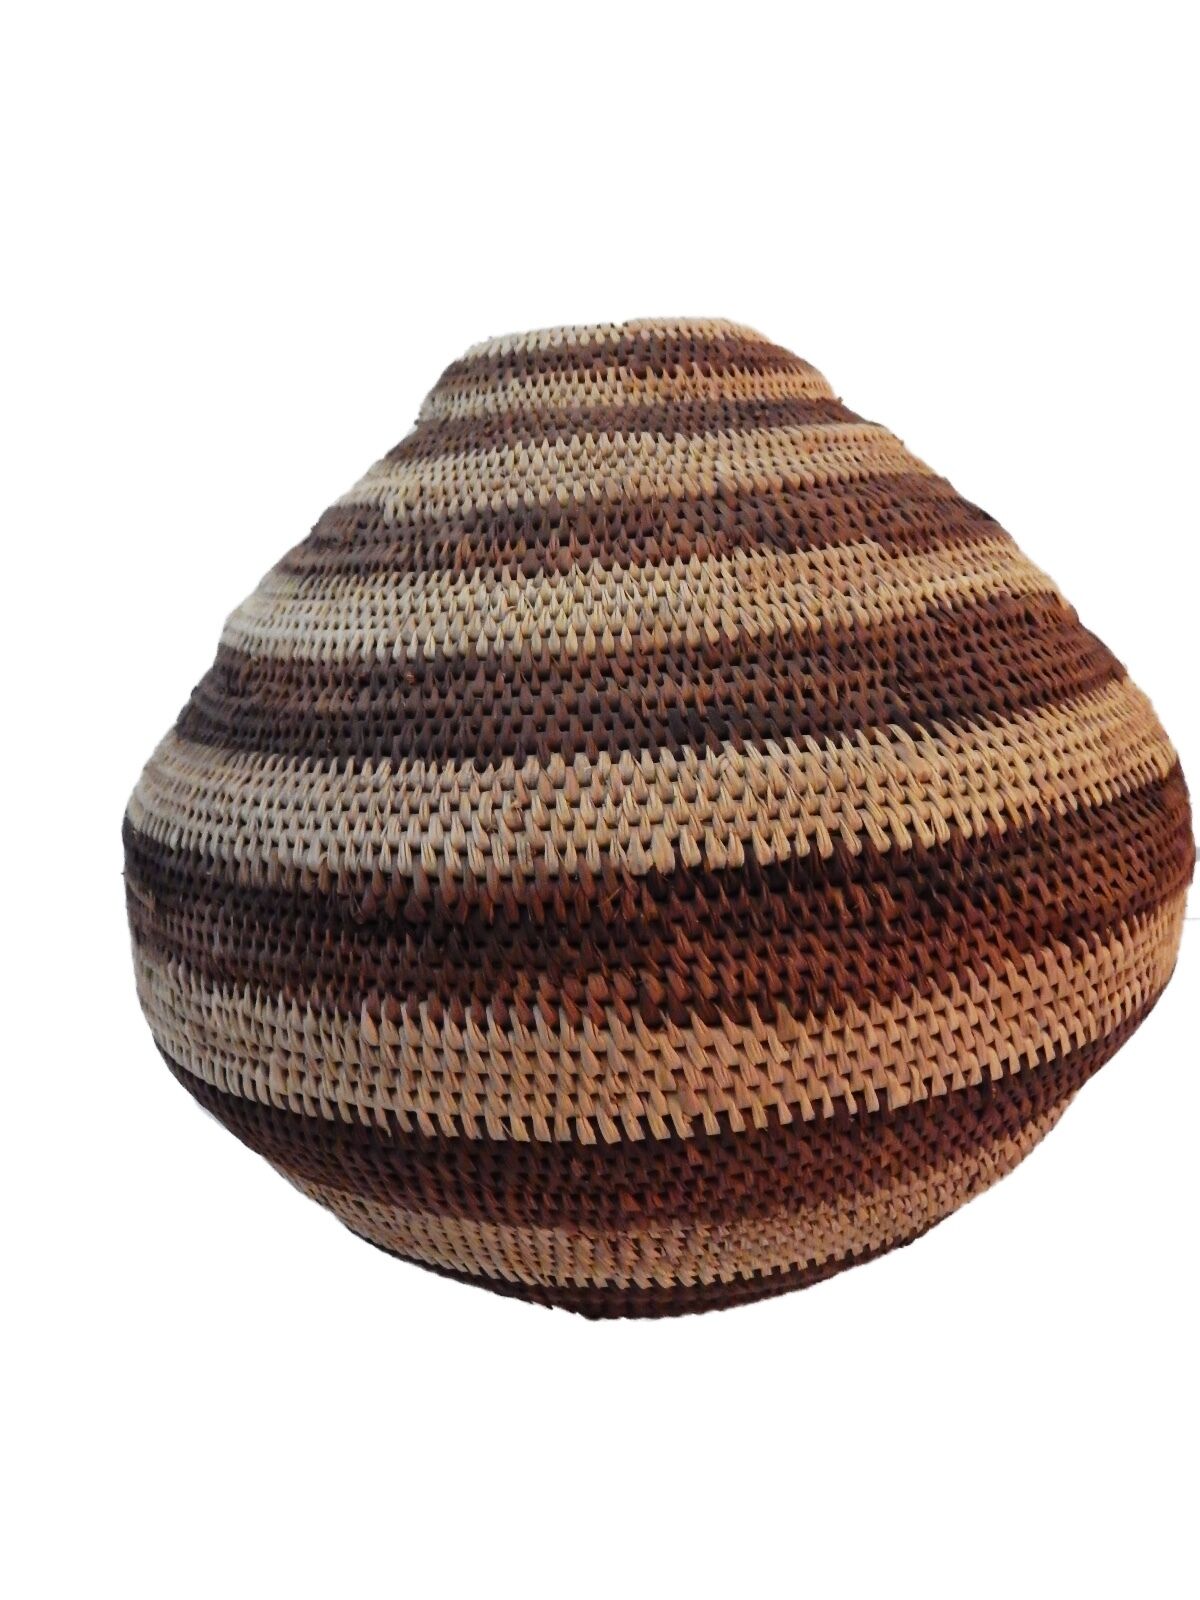 #ABV1A Vintage Botswana Handmade  African Basket Primitives Folk Art 10.5"h